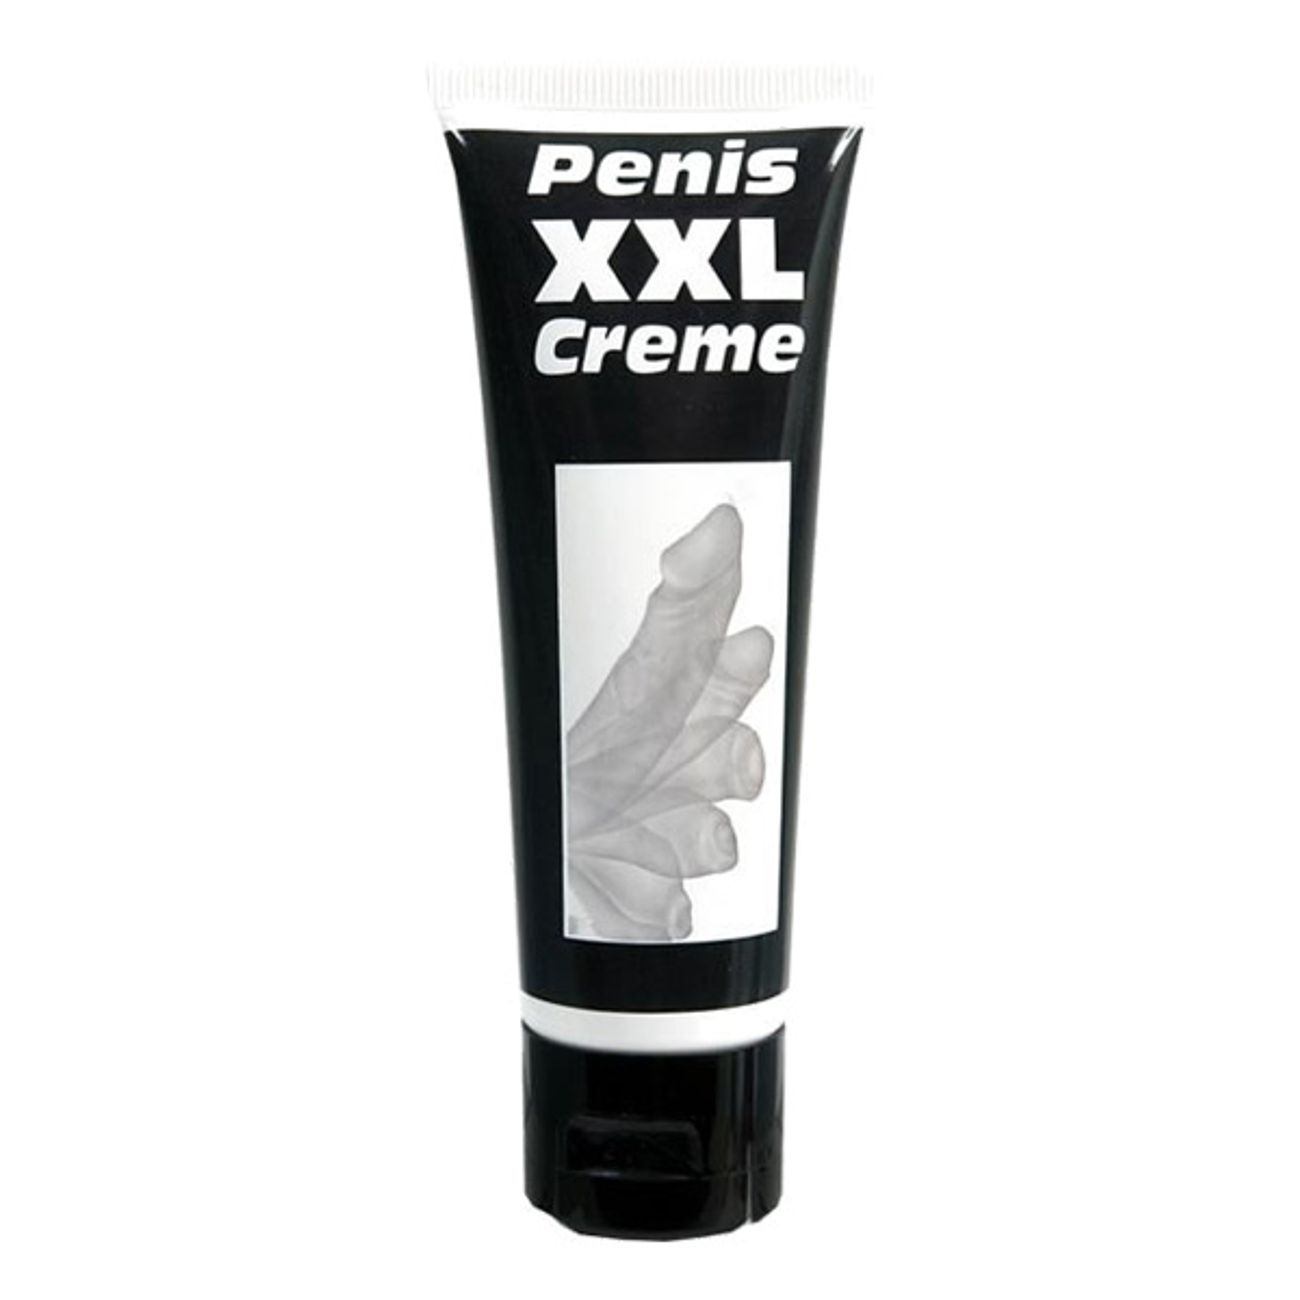 penis-xxl-creme-1